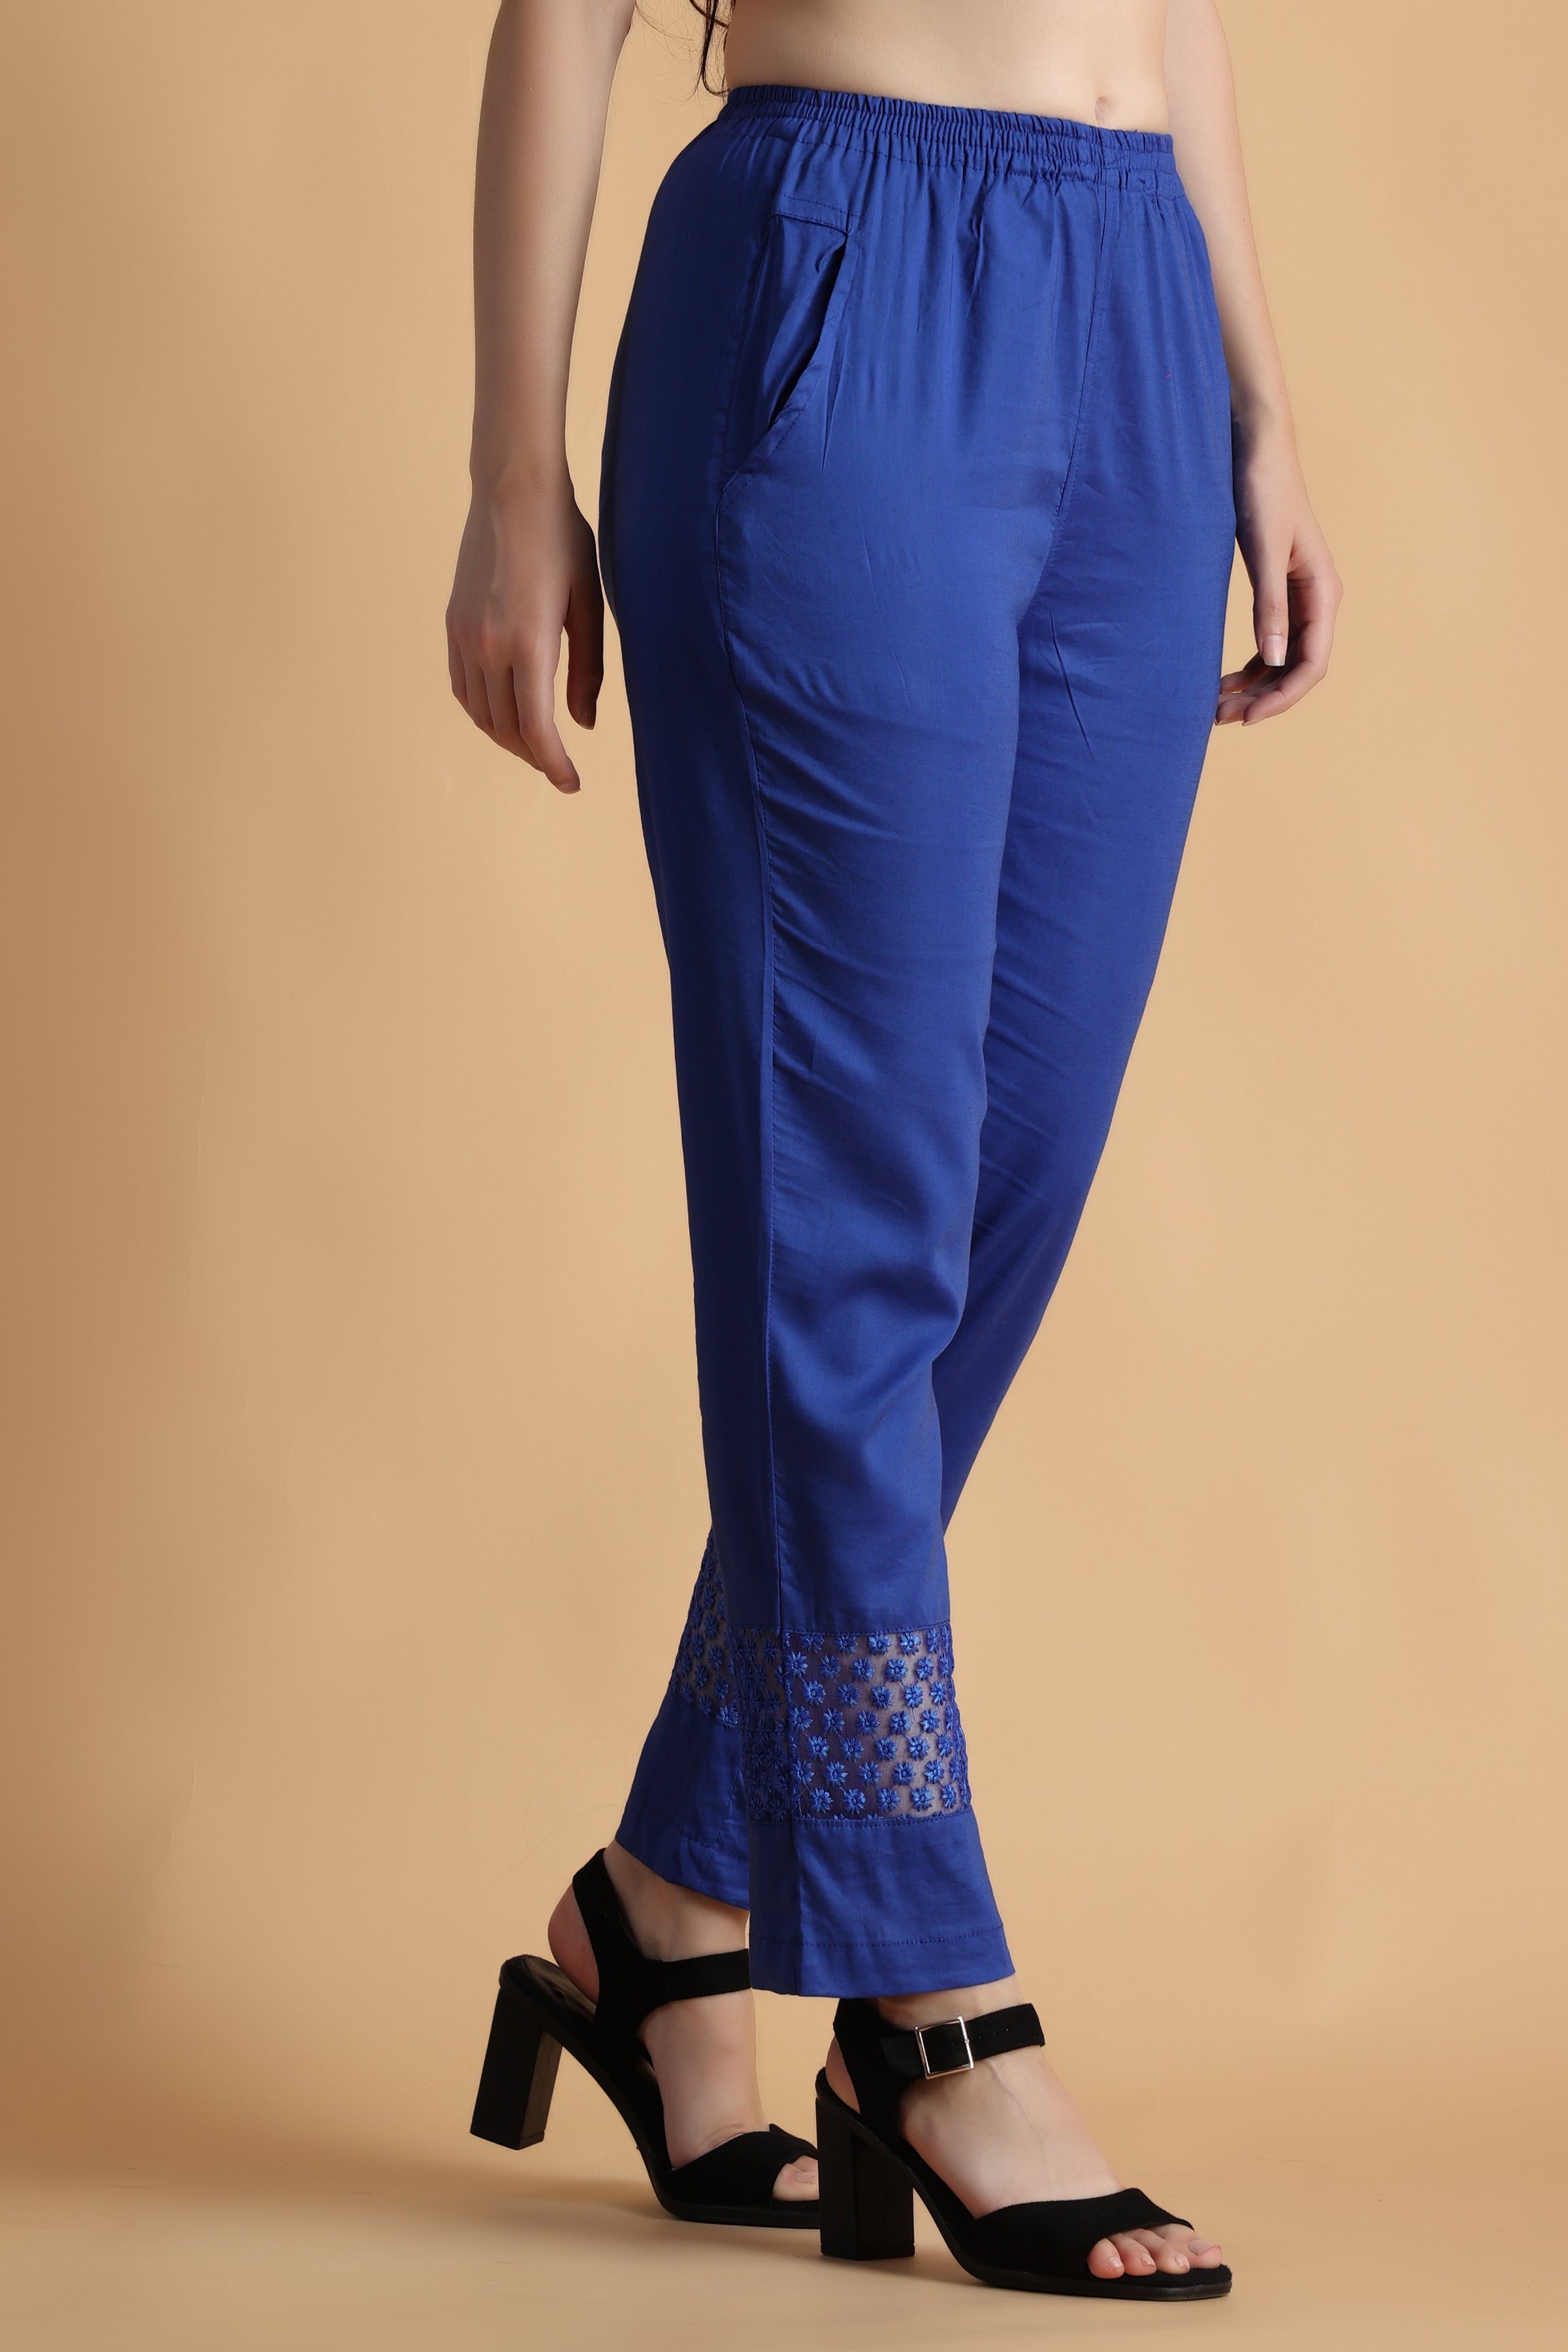 Buy Orange Trousers  Pants for Women by DIVYANK Online  Ajiocom